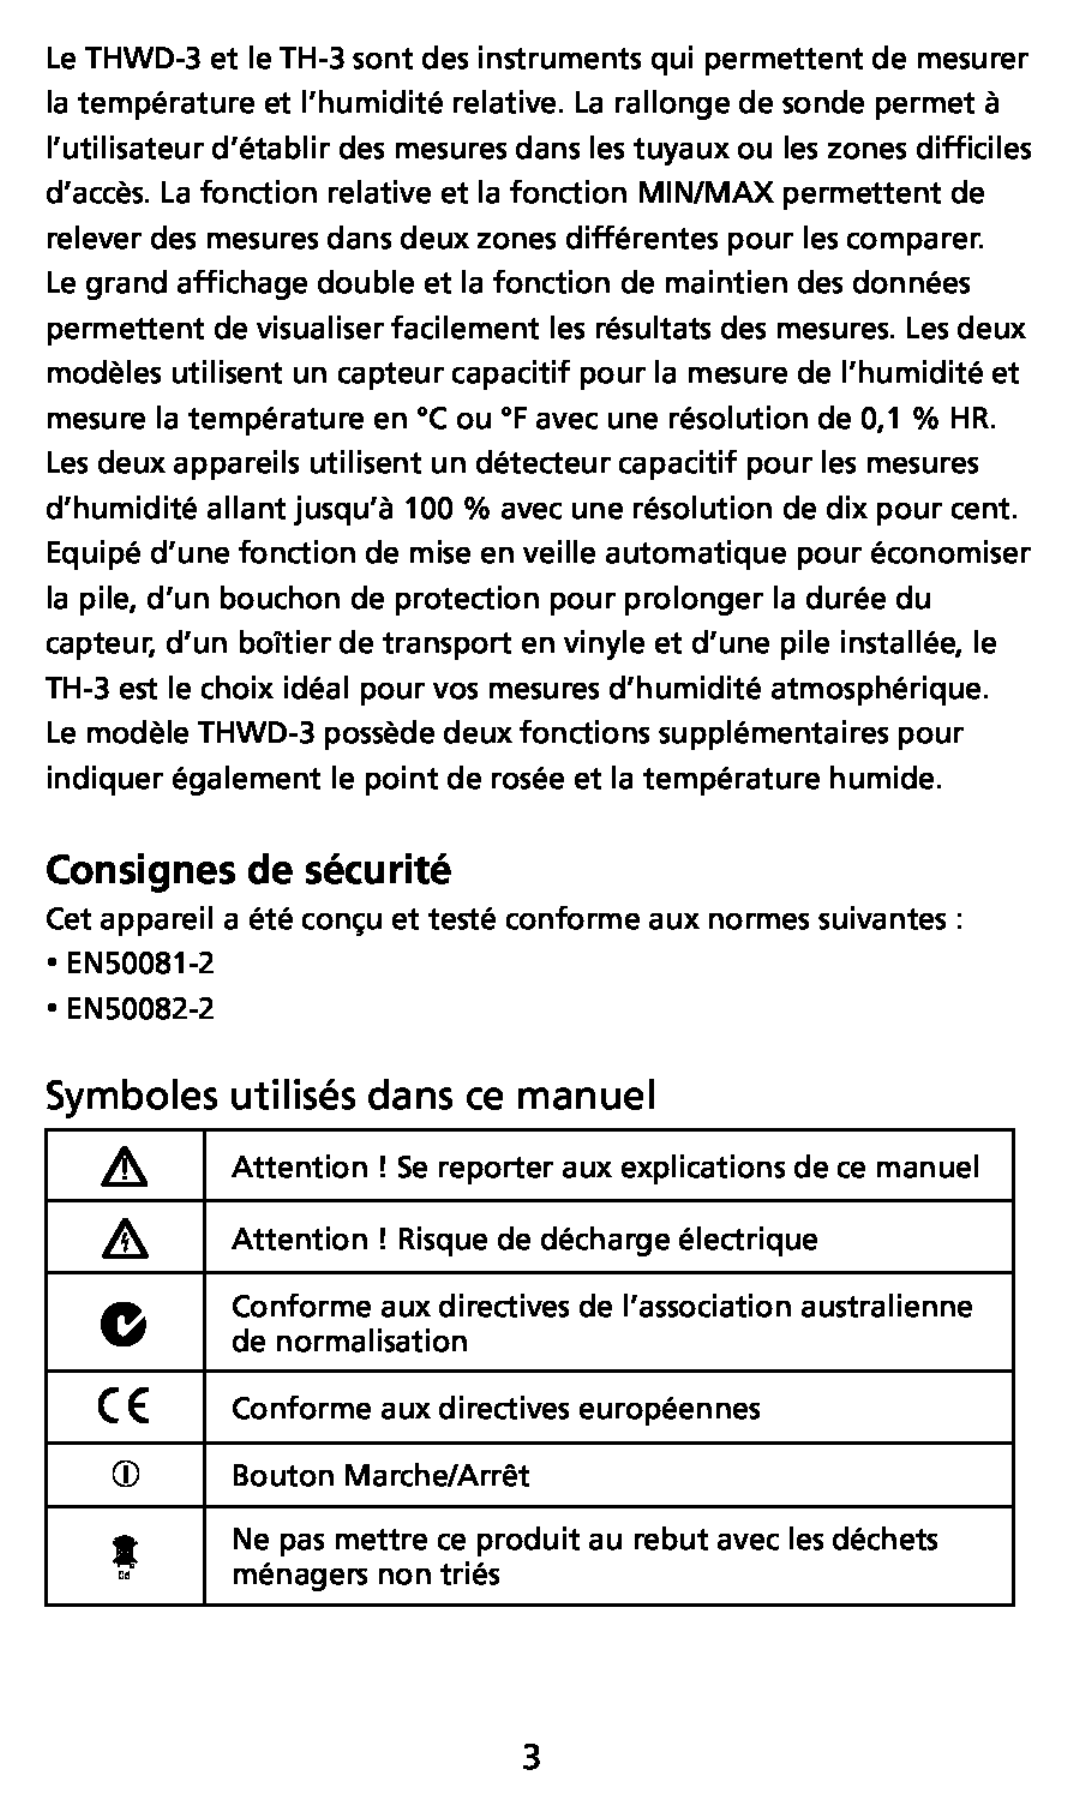 Ampro Corporation THWD-3, TH-3 user manual Consignes de sécurité, Symboles utilisés dans ce manuel 